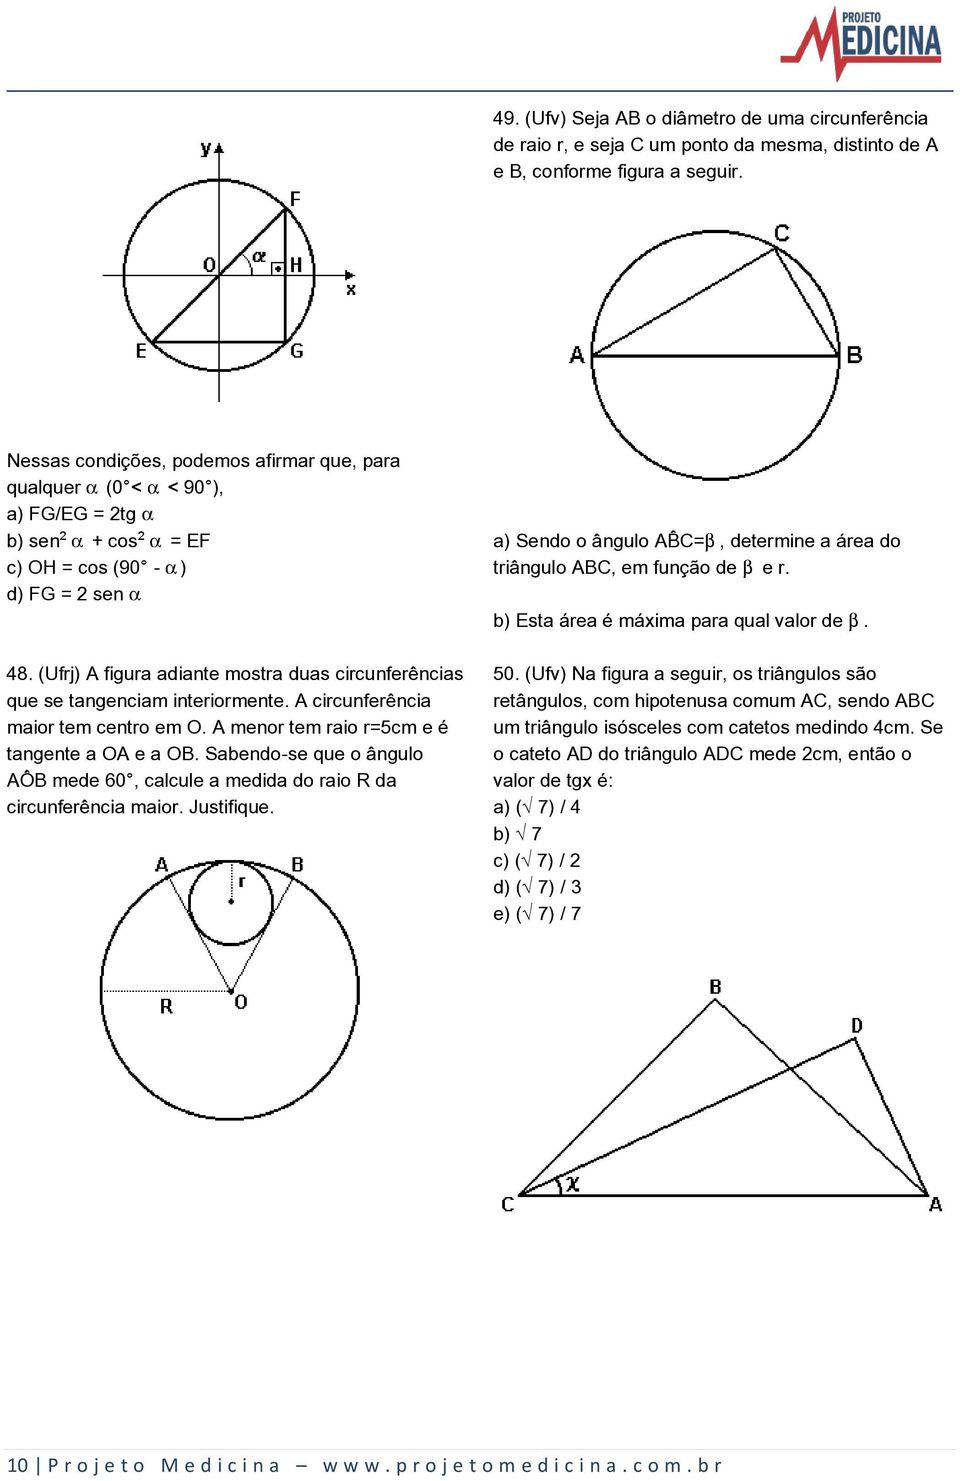 (Ufrj) A figura adiante mostra duas circunferências que se tangenciam interiormente. A circunferência maior tem centro em O. A menor tem raio r=5cm e é tangente a OA e a OB.